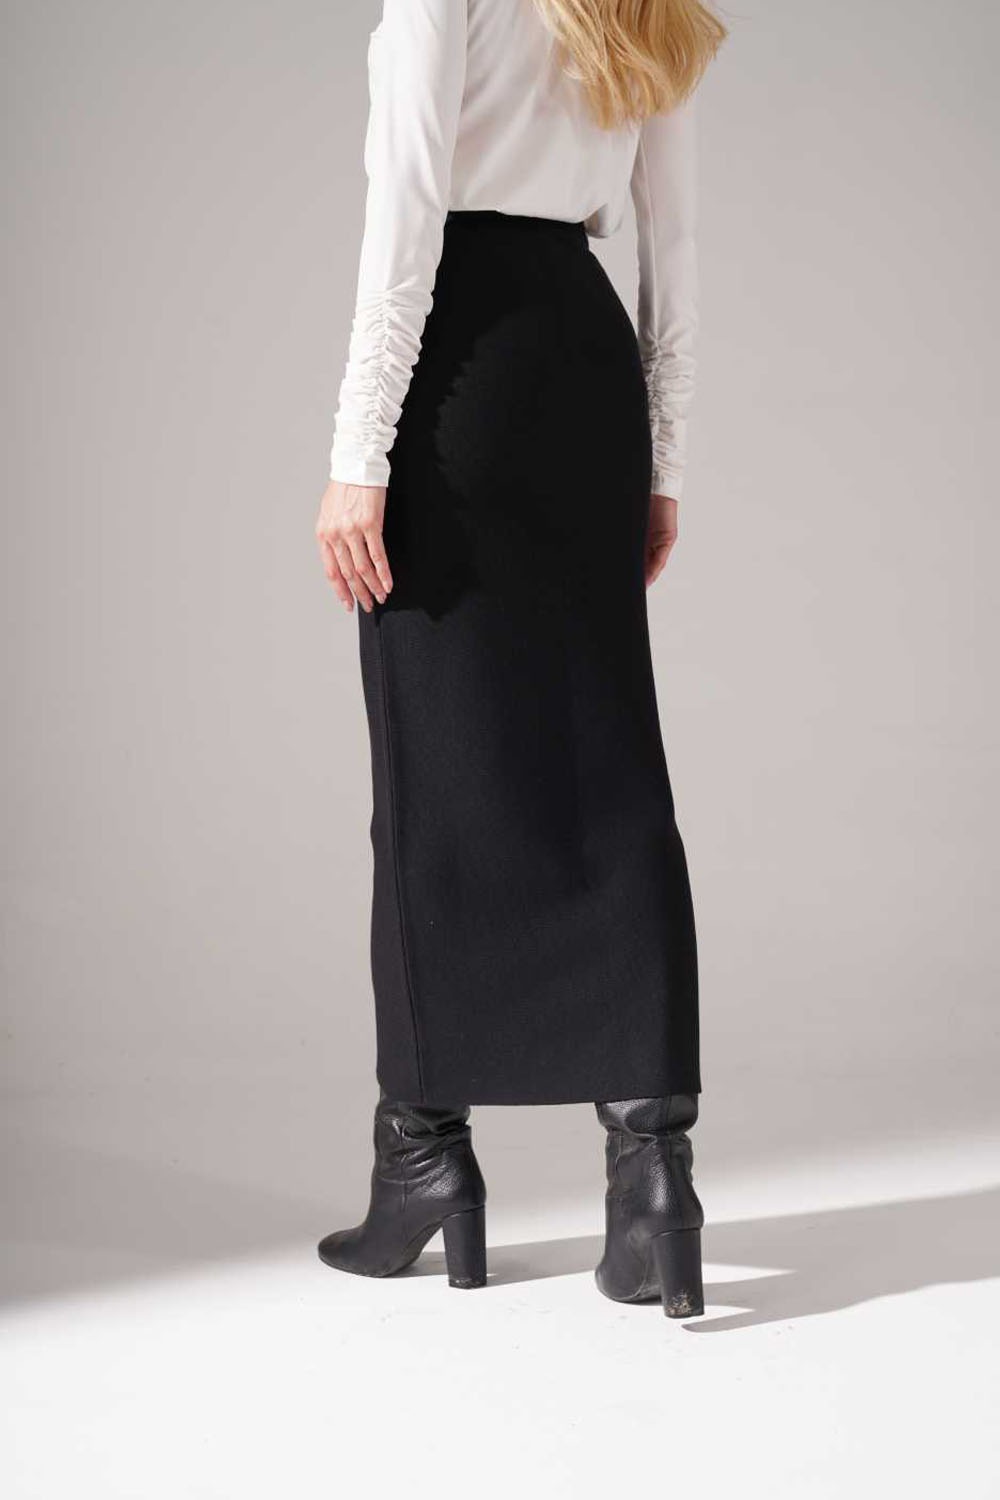 Silvery Knitted Knitwear Skirt (Black)